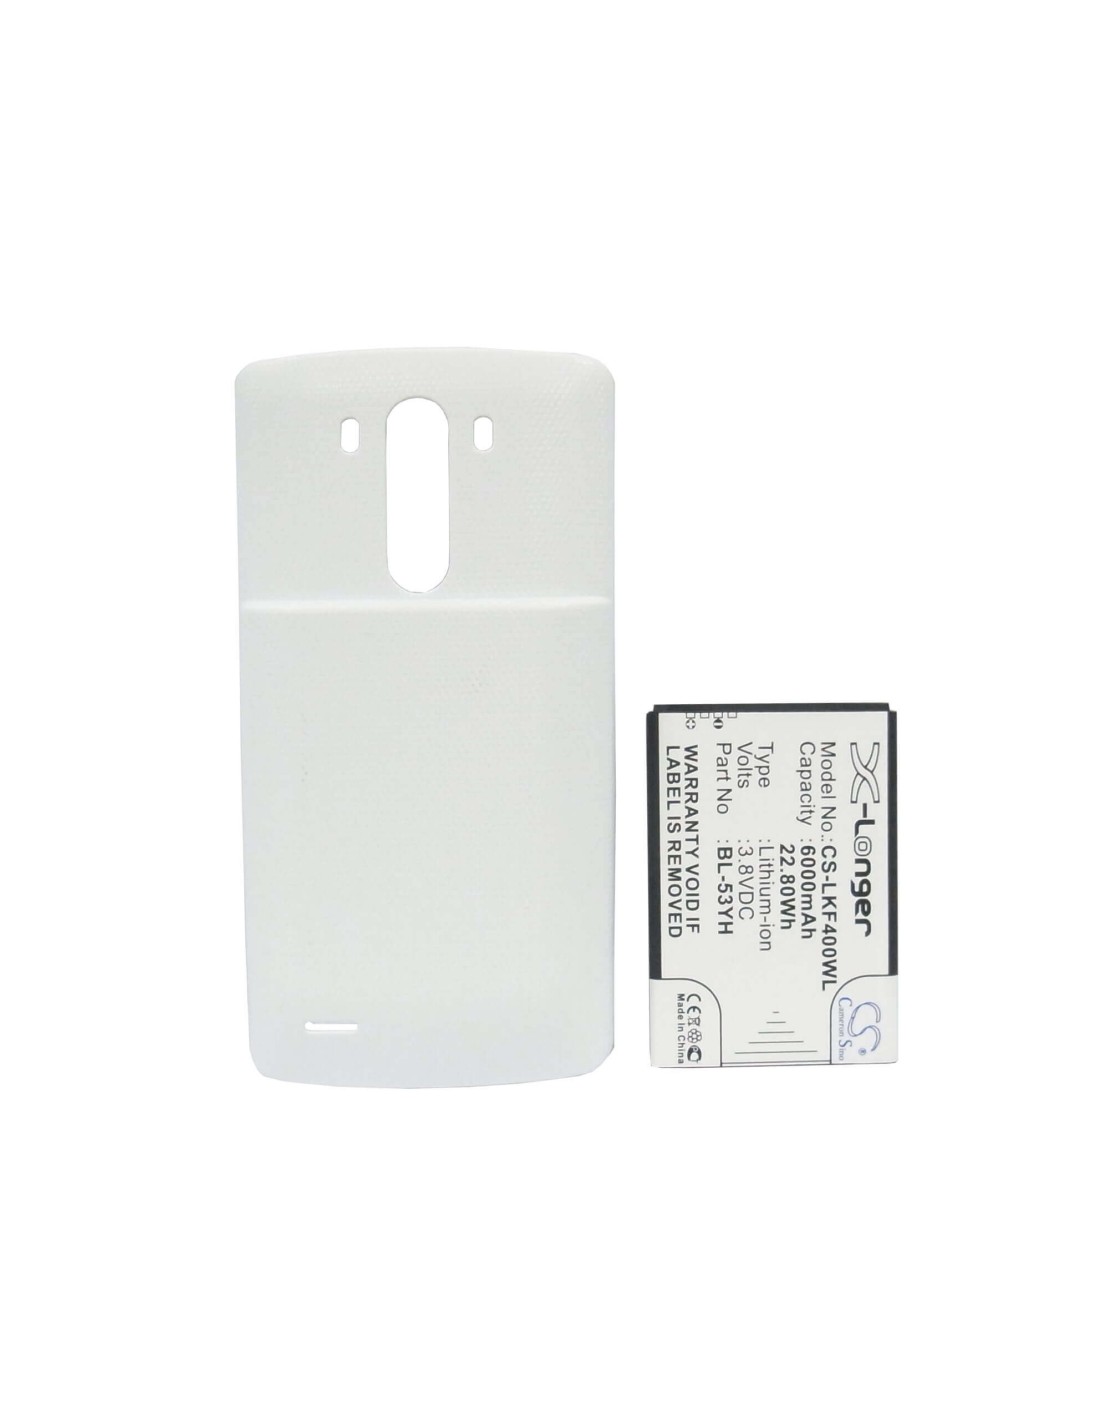 Battery for LG G3, D855, D855 LTE, white back cover 3.8V, 6000mAh - 22.80Wh